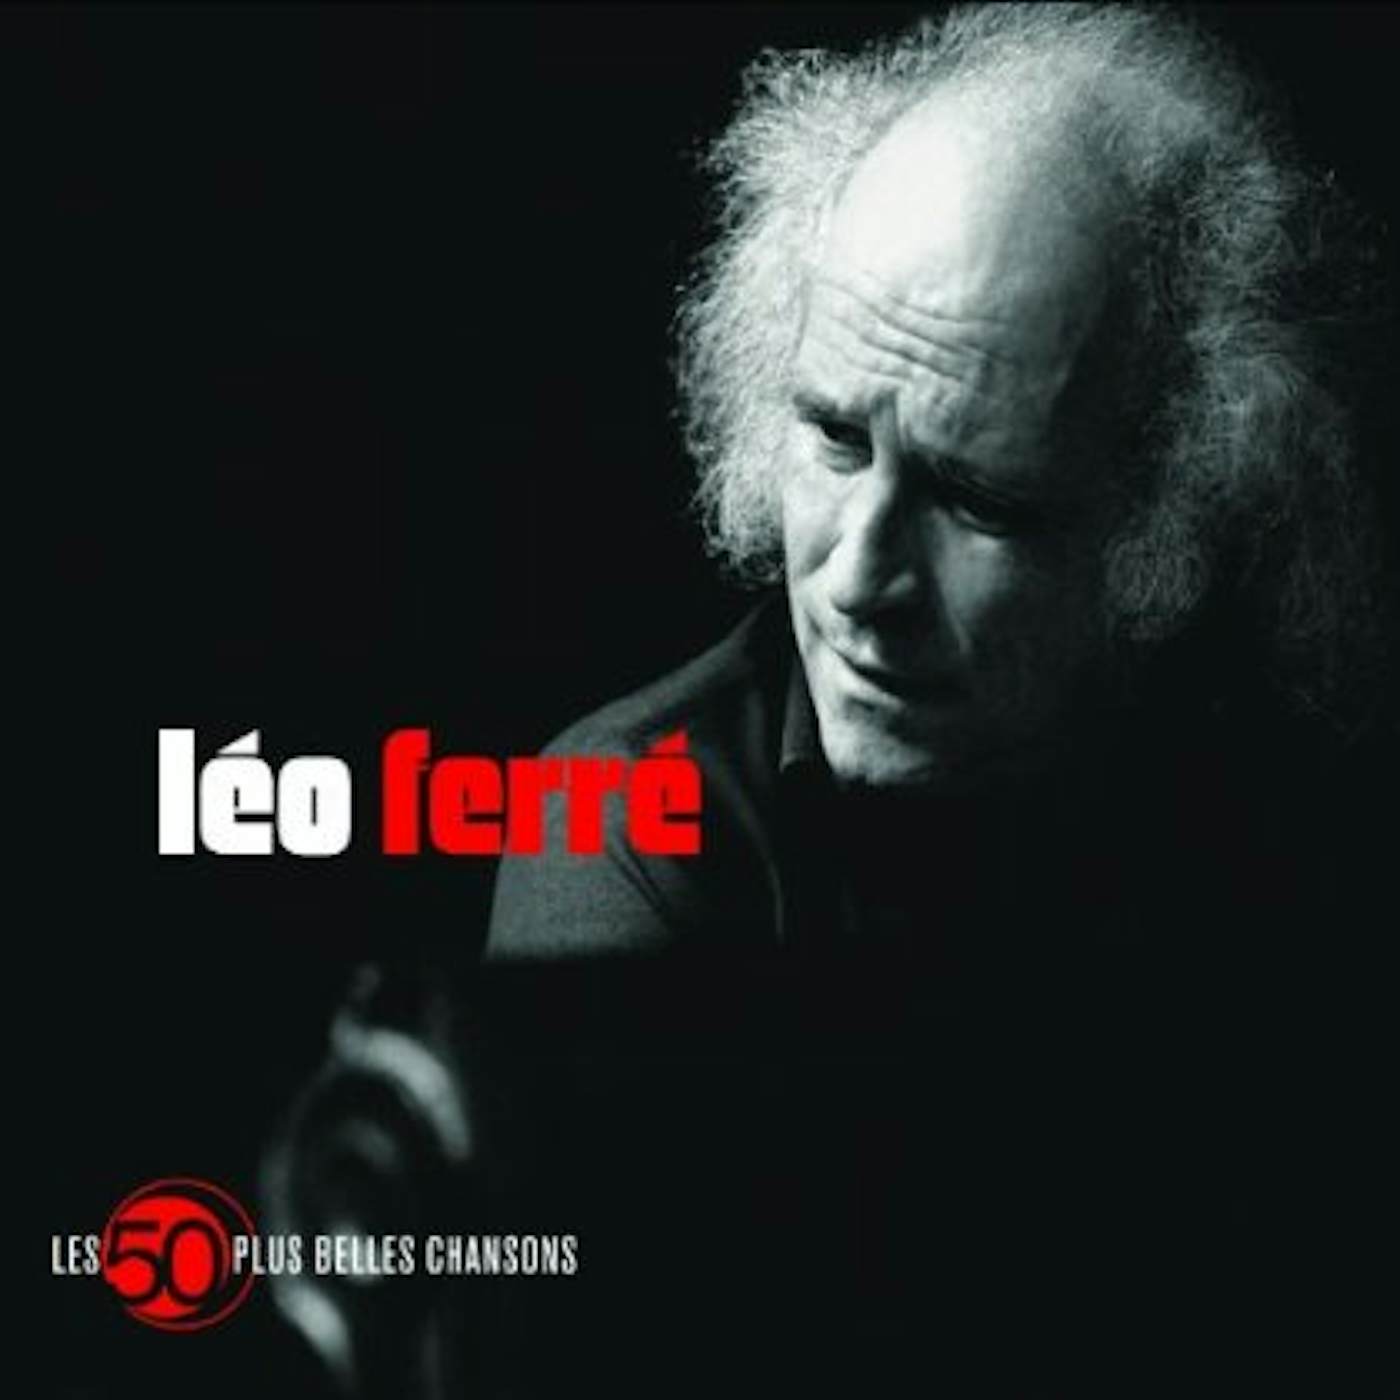 Léo Ferré LES 50 PLUS BELLES CHANSONS CD